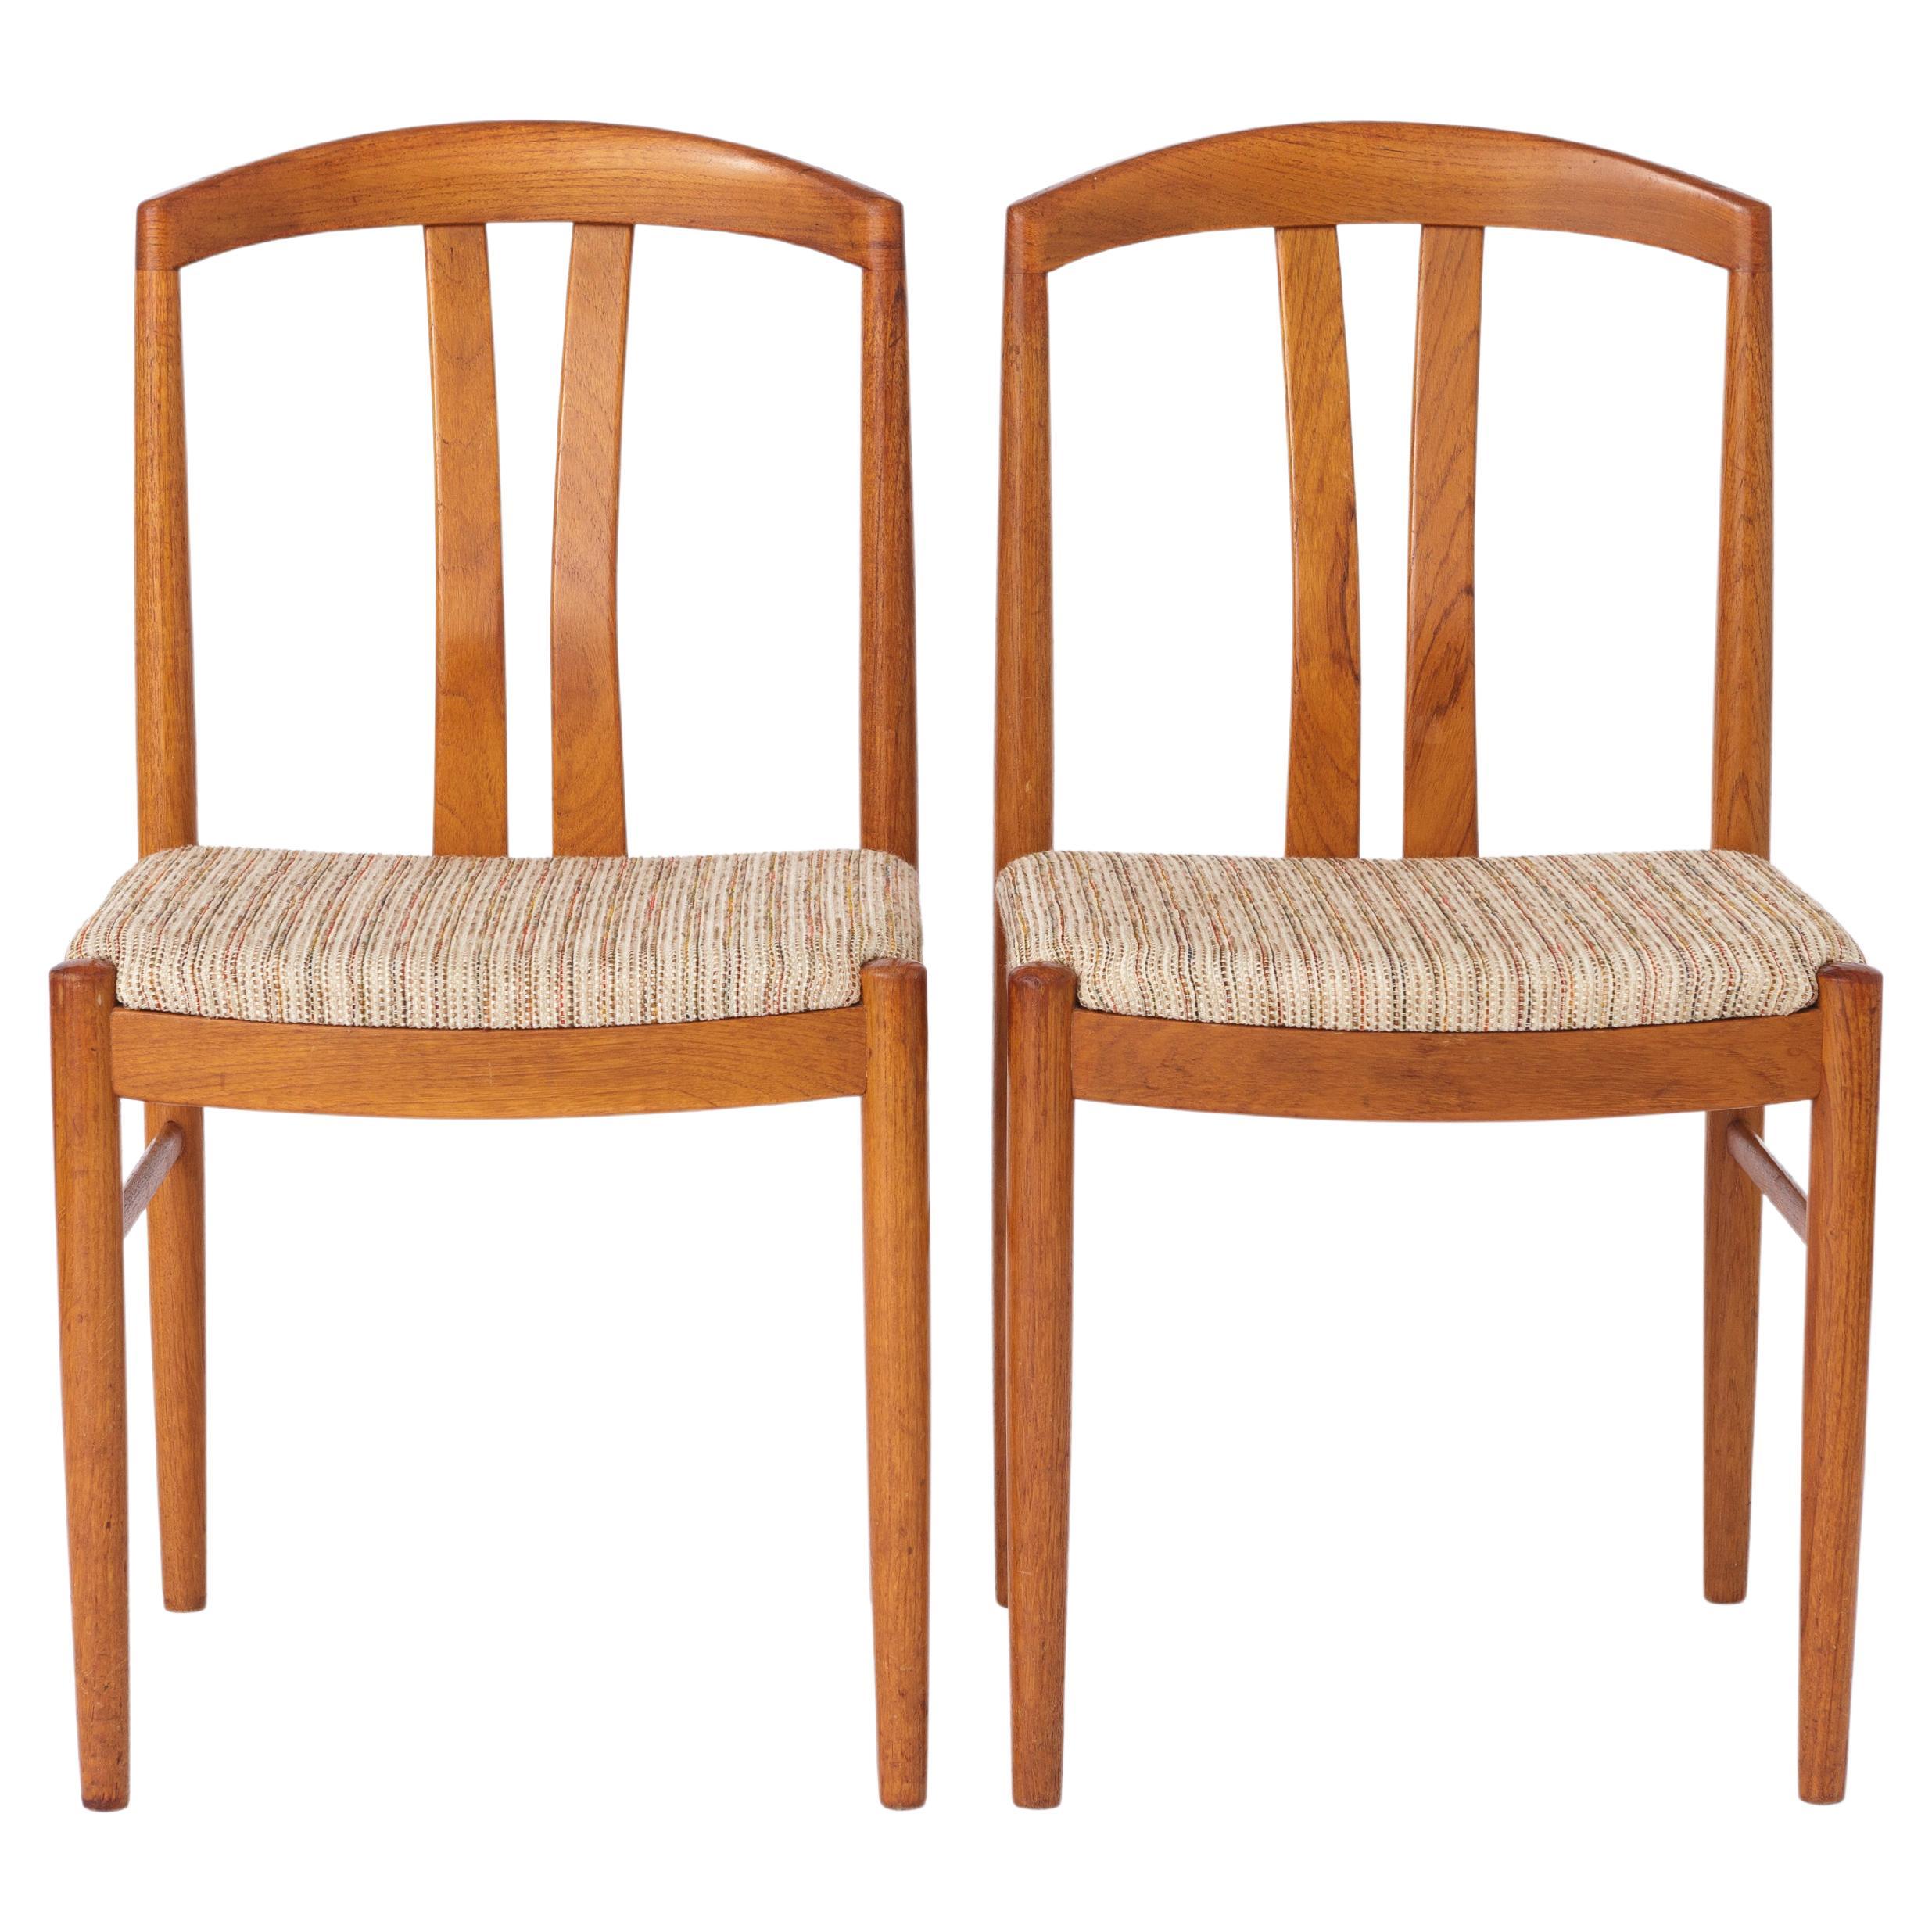 2 von 4 Stühlen von Carl Ekström für Albin Johansson & Söner, Schweden, 1960er Jahre - Satz o